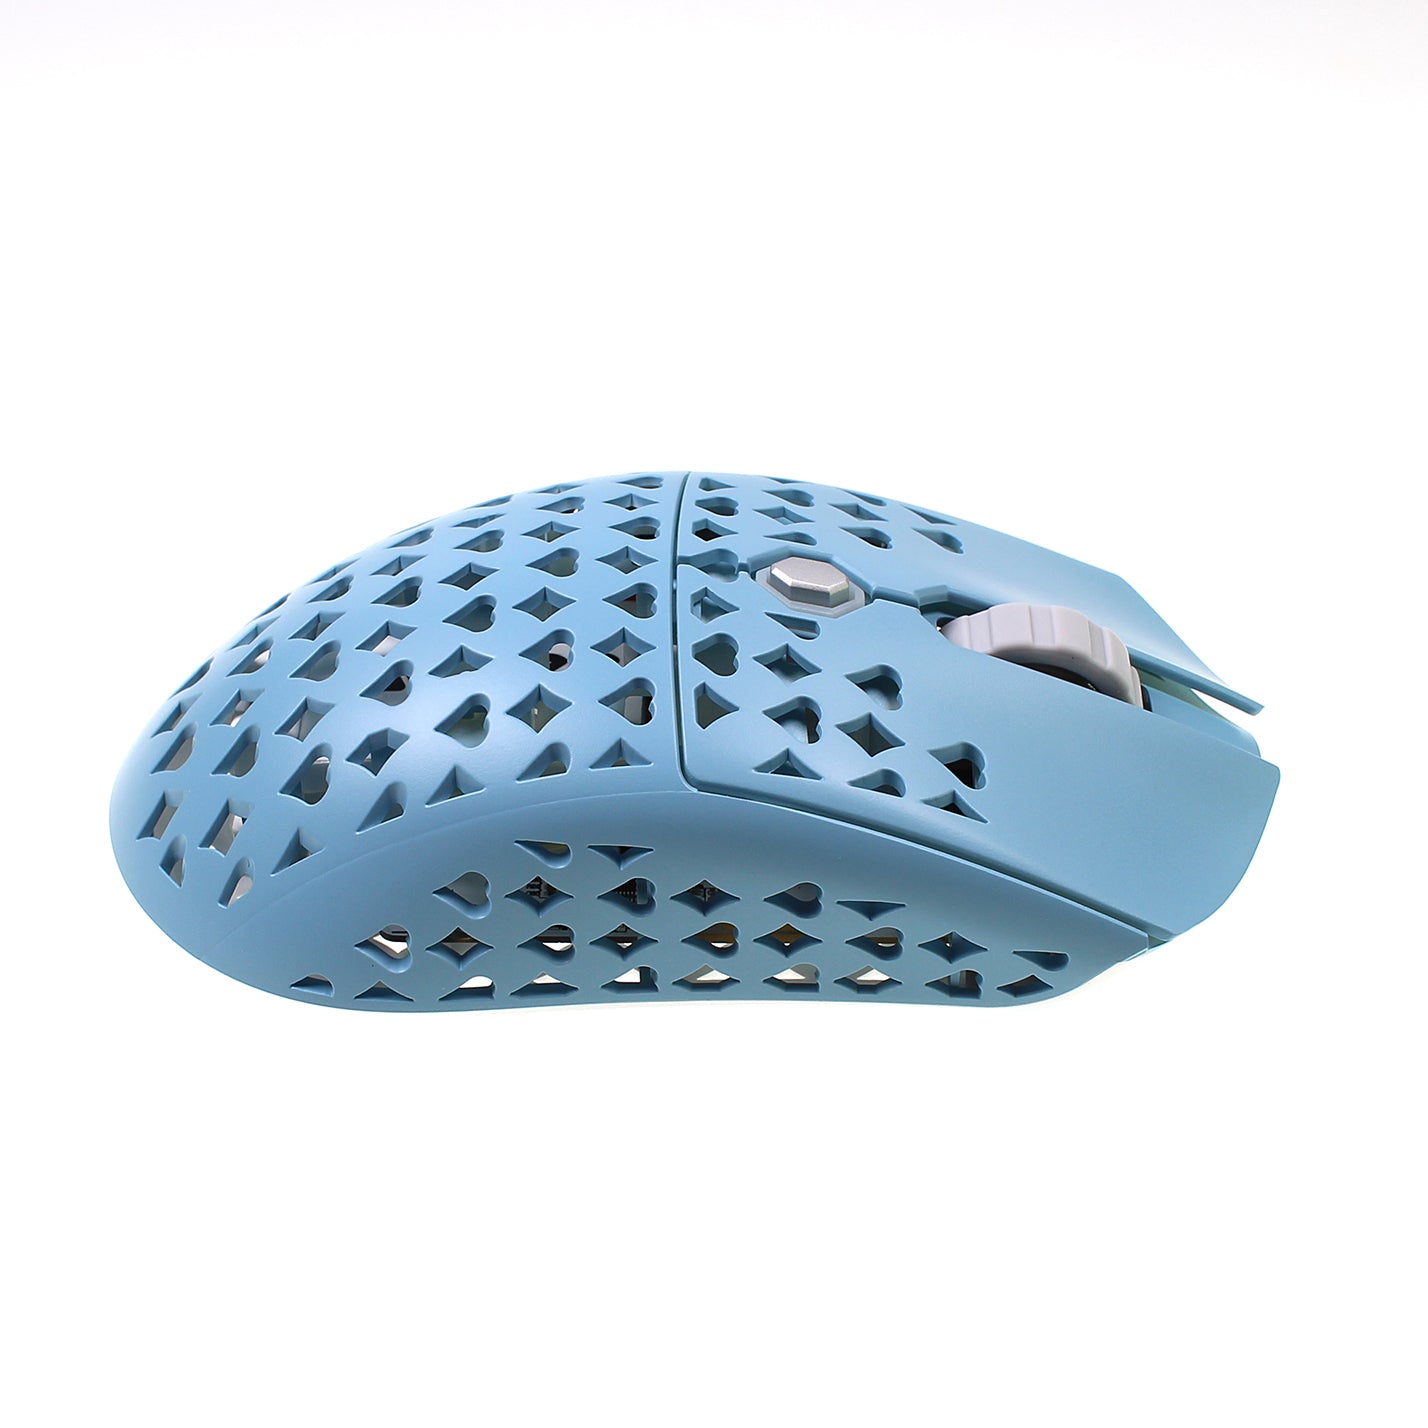 Vancer™ Gretxa Wireless Gaming Mouse V2 - Blue